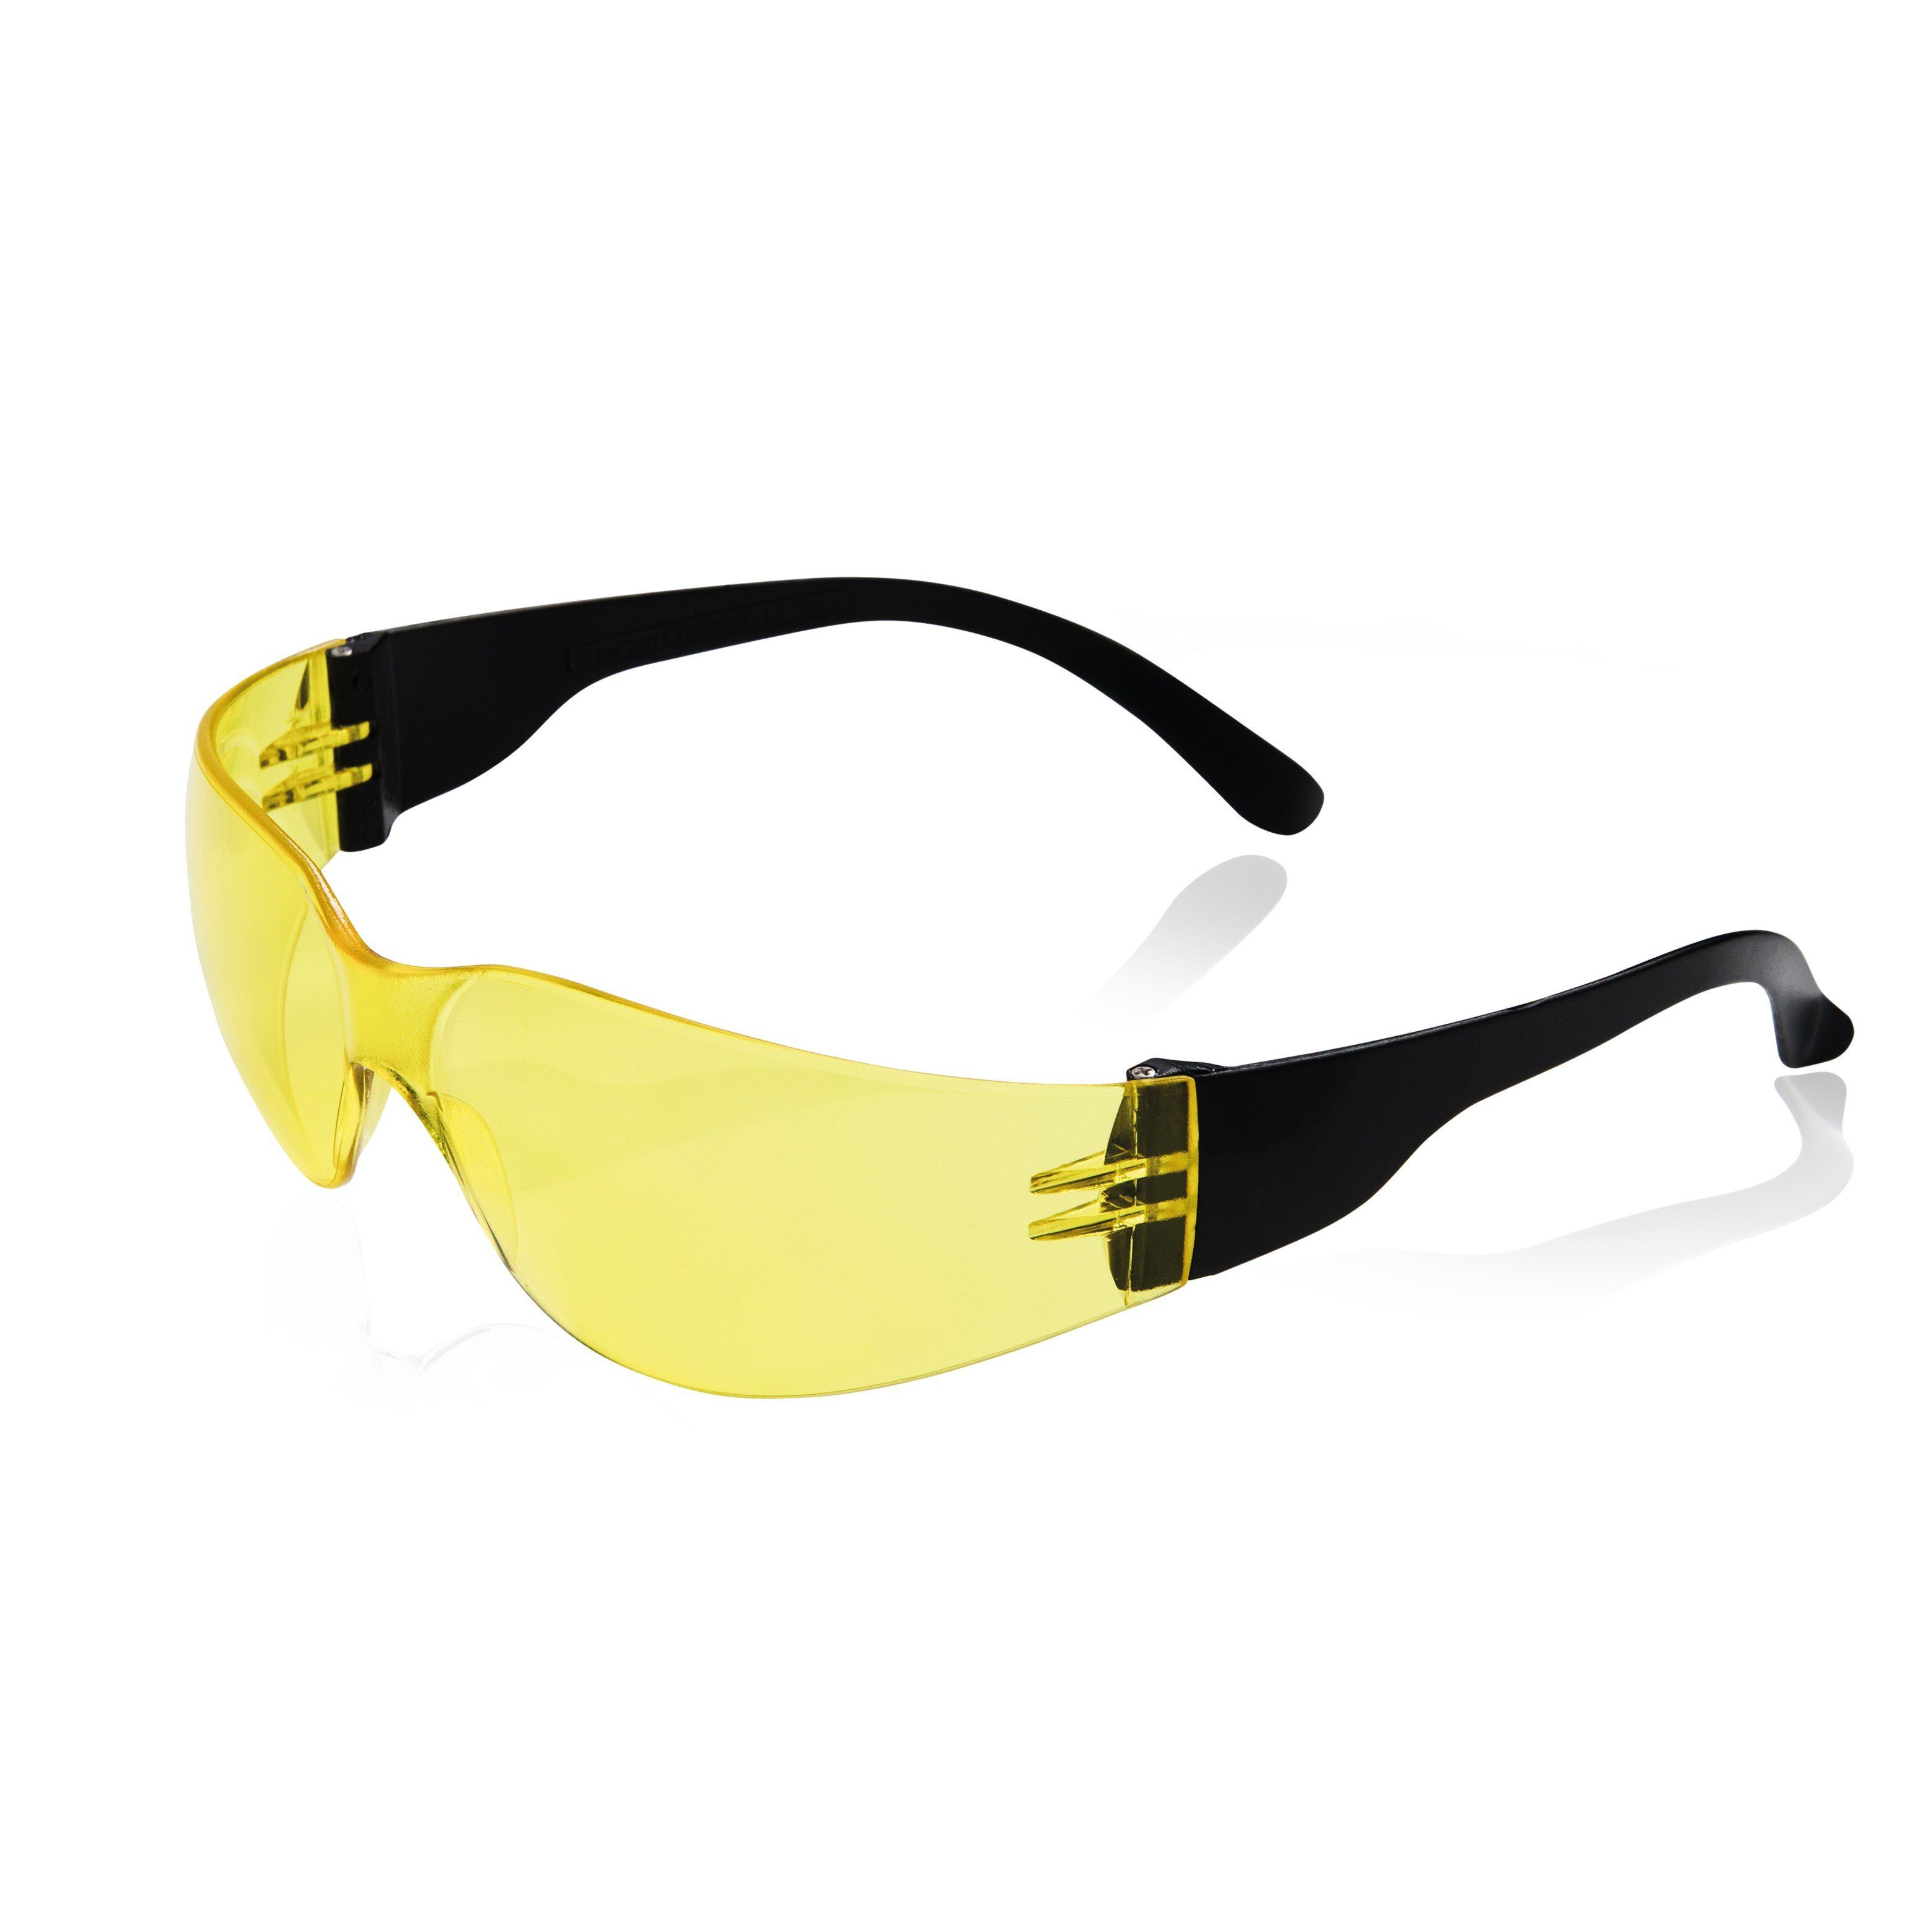 PRO FIT Stück) Fitzner Schutzbrille, (1, Light by Polycarbonatscheiben, gelbe Arbeitsschutzbrille